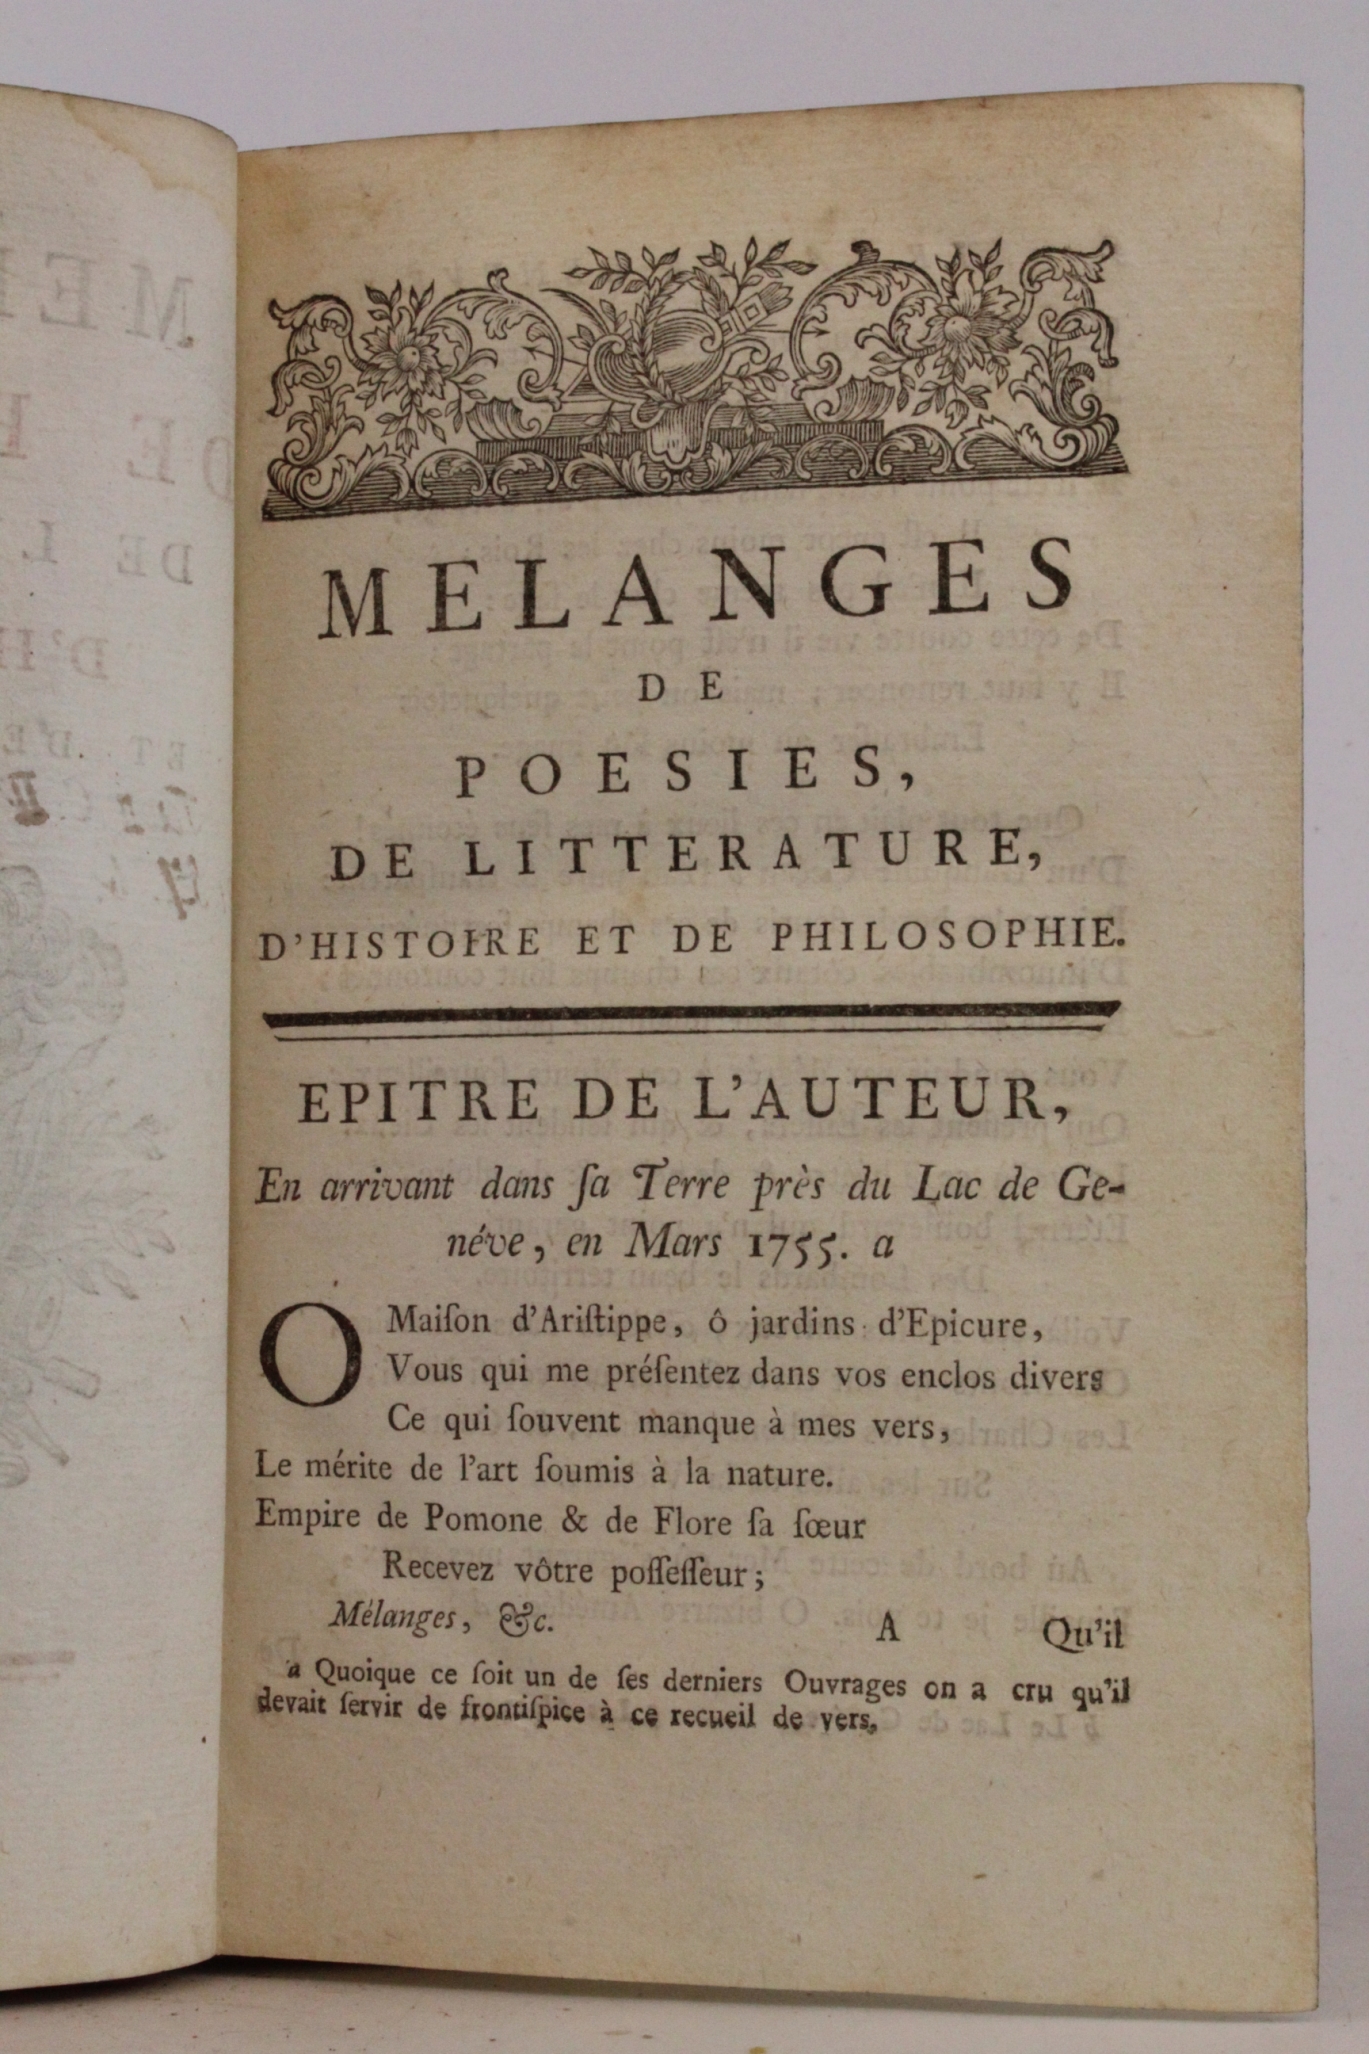 Voltaire: Collection Complette des Oeuvres. Premiere Edition Tome Second: Melanges de Poesies, de Litterature, d Histoire et de Philosophie